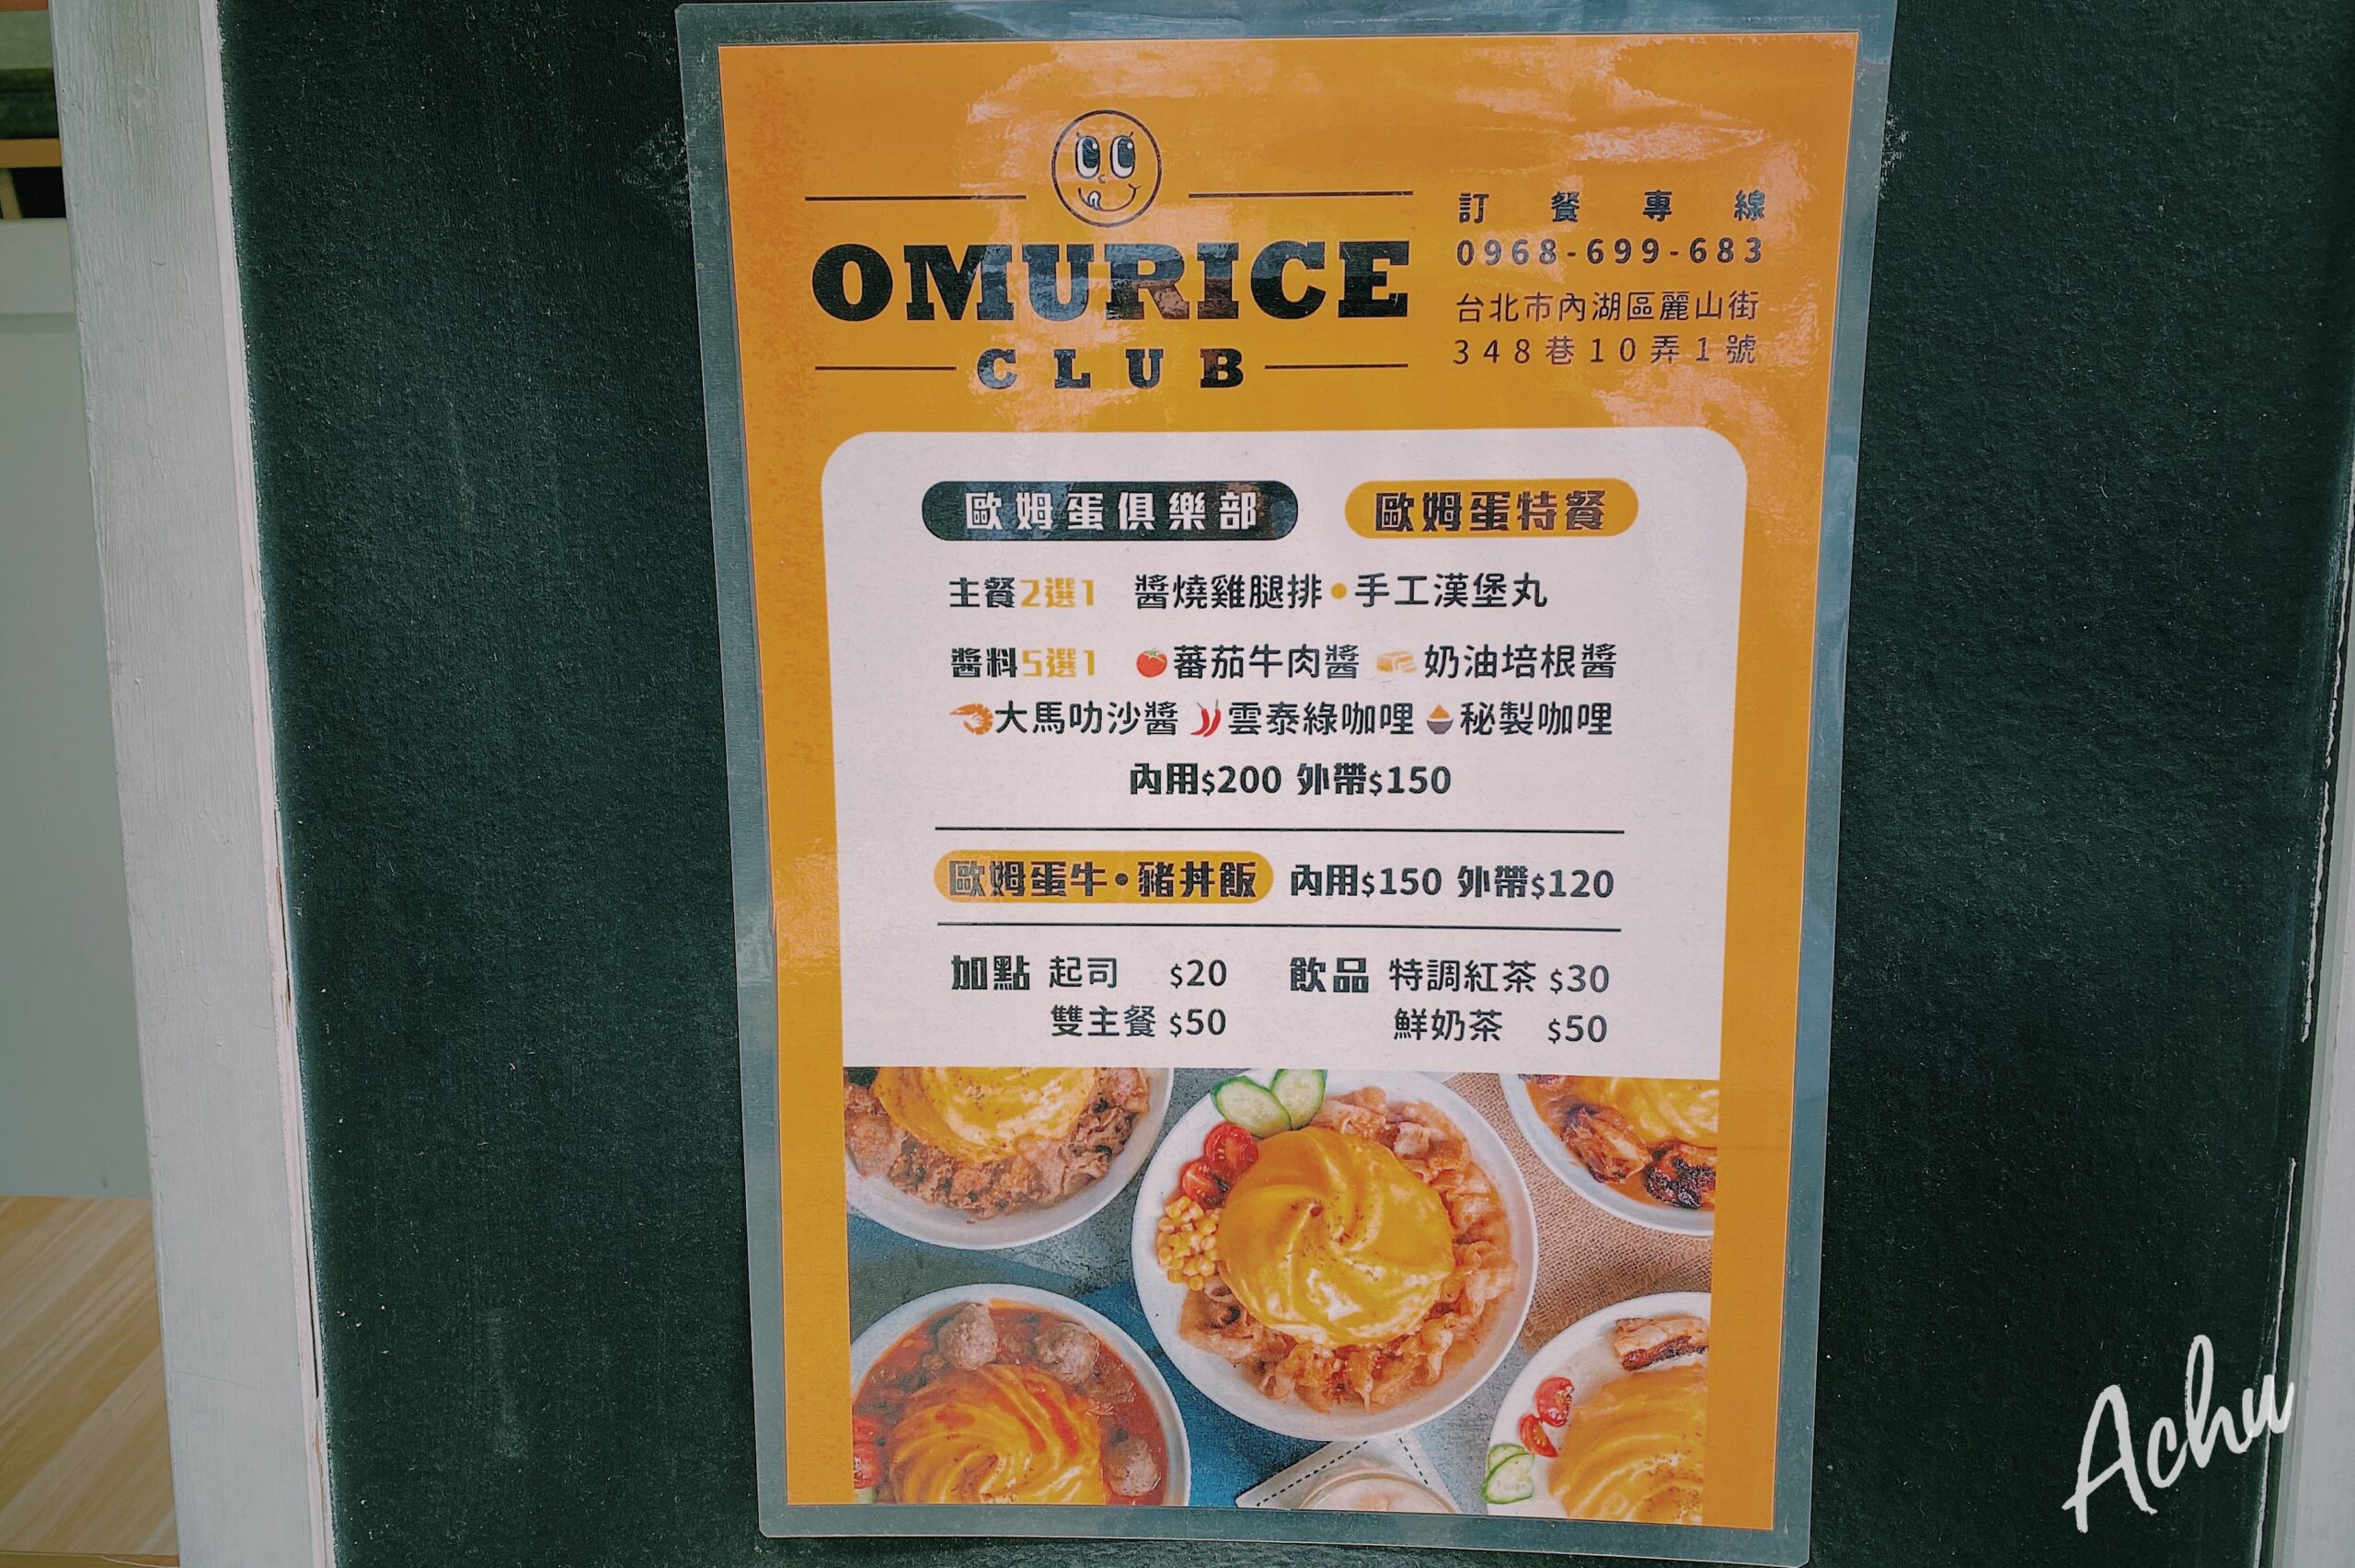 【內湖美食】歐姆蛋俱樂部 omuriceclub 自由搭配主餐及醬料的滑嫩旋轉歐姆蛋 (菜單)